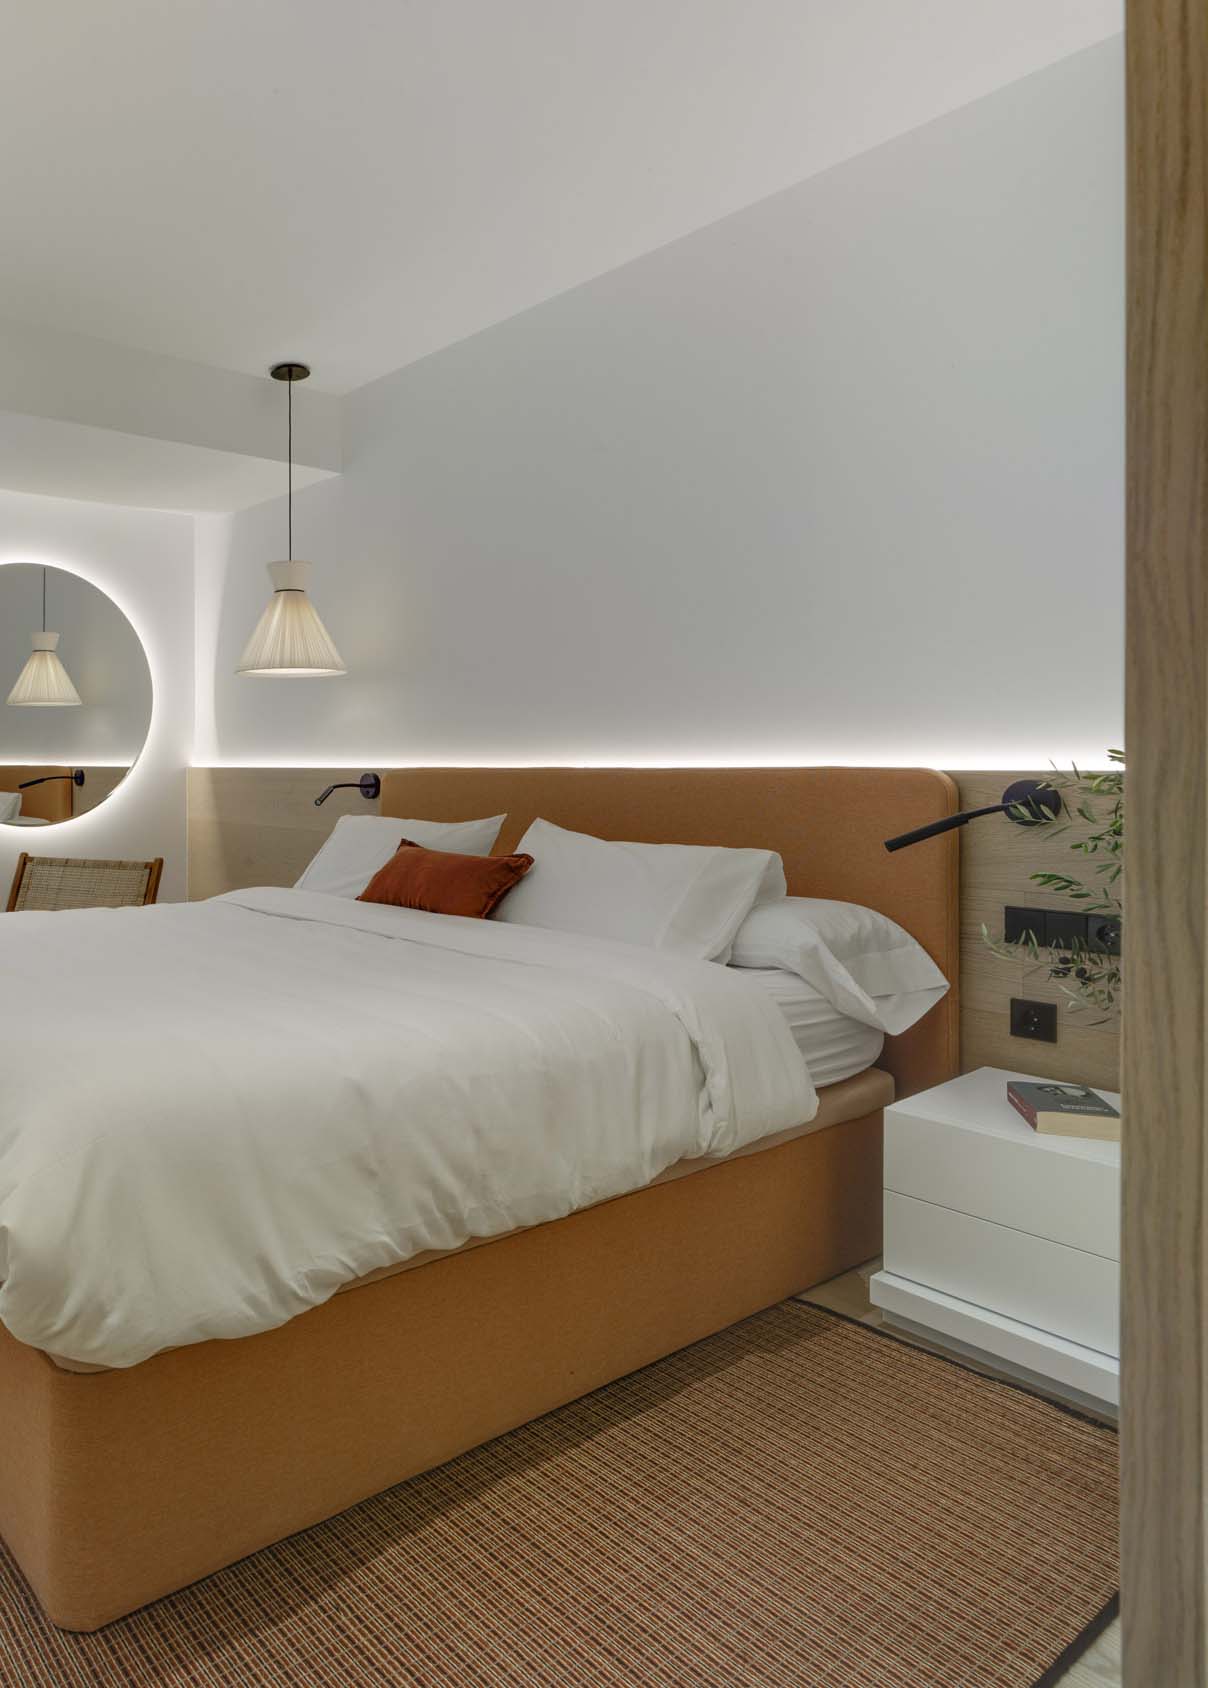 Invertir mecanismo evidencia Cómo iluminar un dormitorio? Claves para acertar | AG Diseño Interior